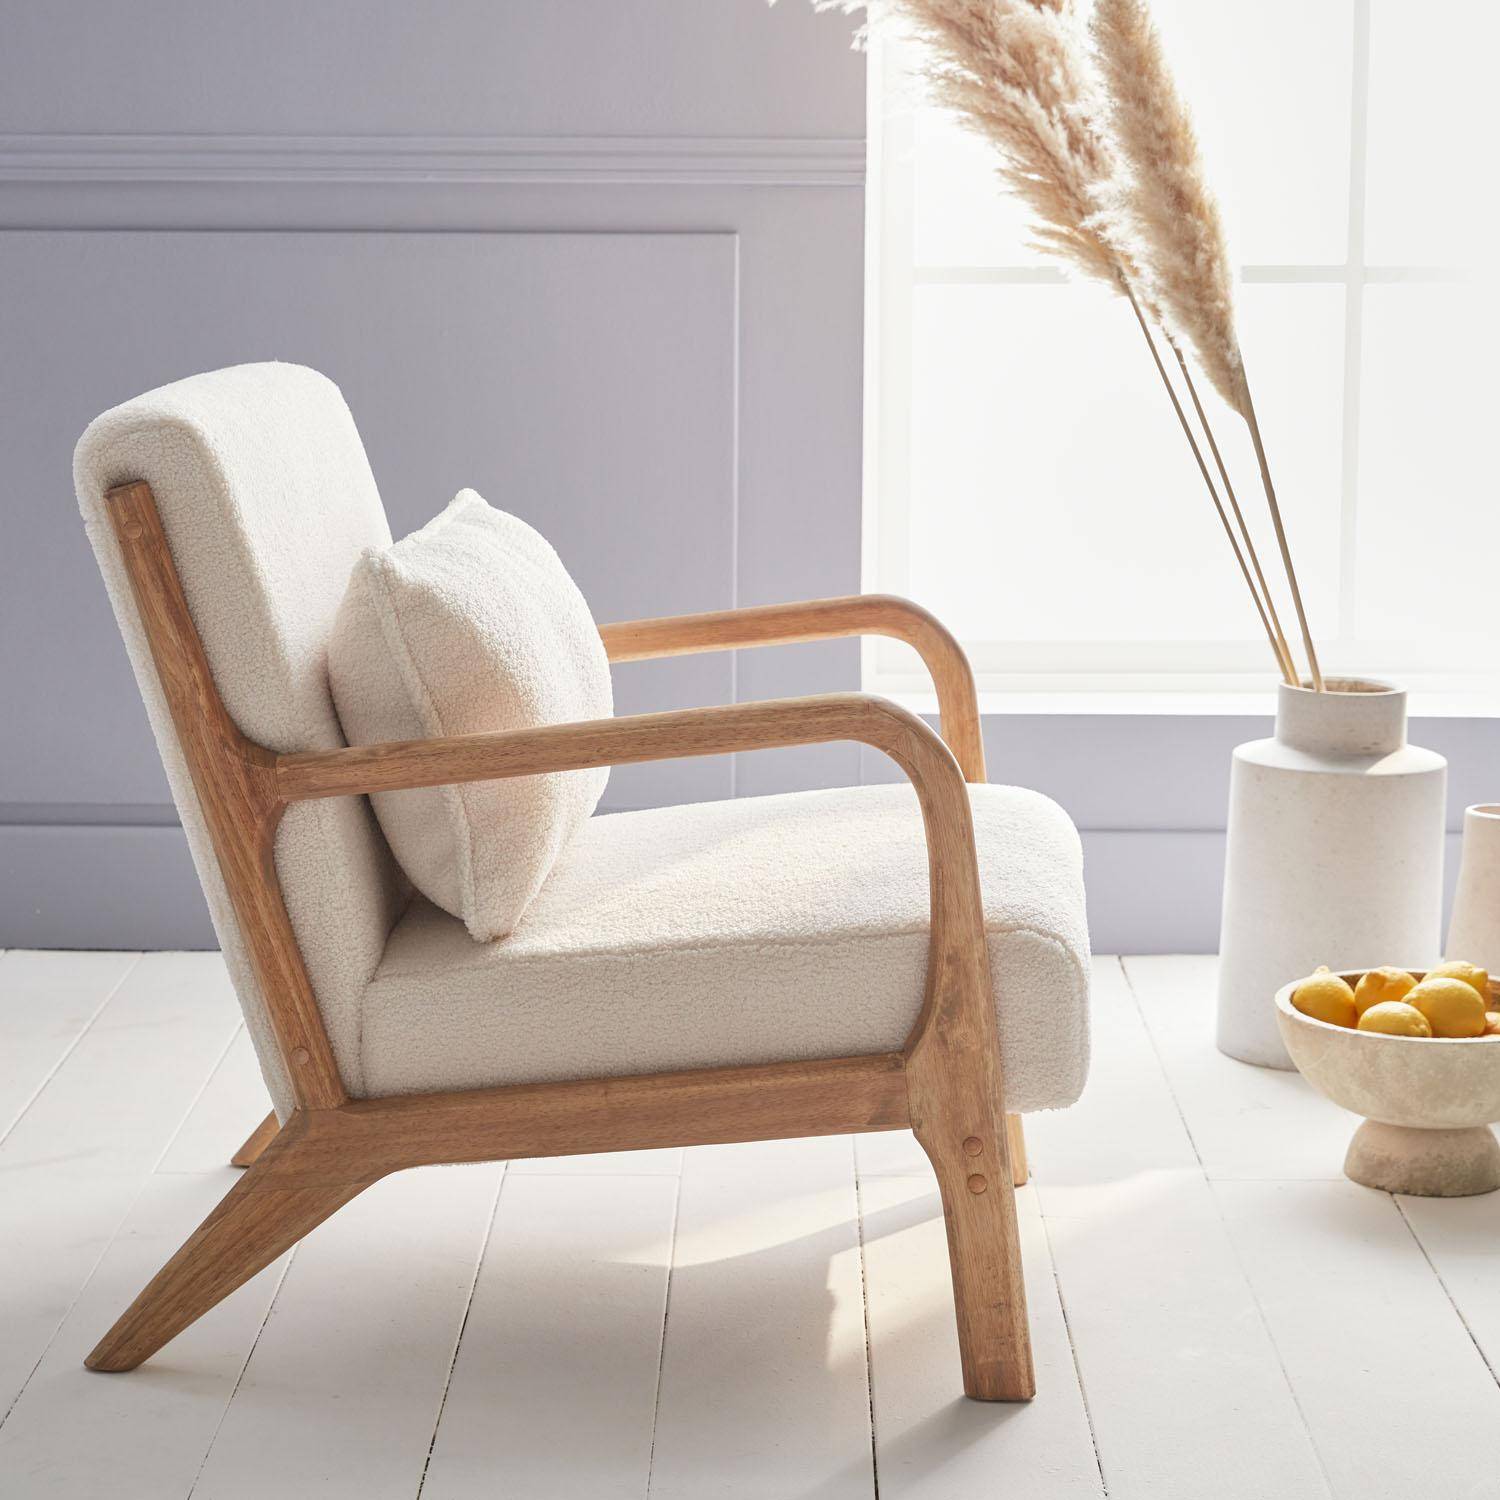 Weißer Sessel, Holz und Stoff, 1-Sitz, skandinavischer Stil, solides Holzgestell, bequeme Sitzfläche Photo3